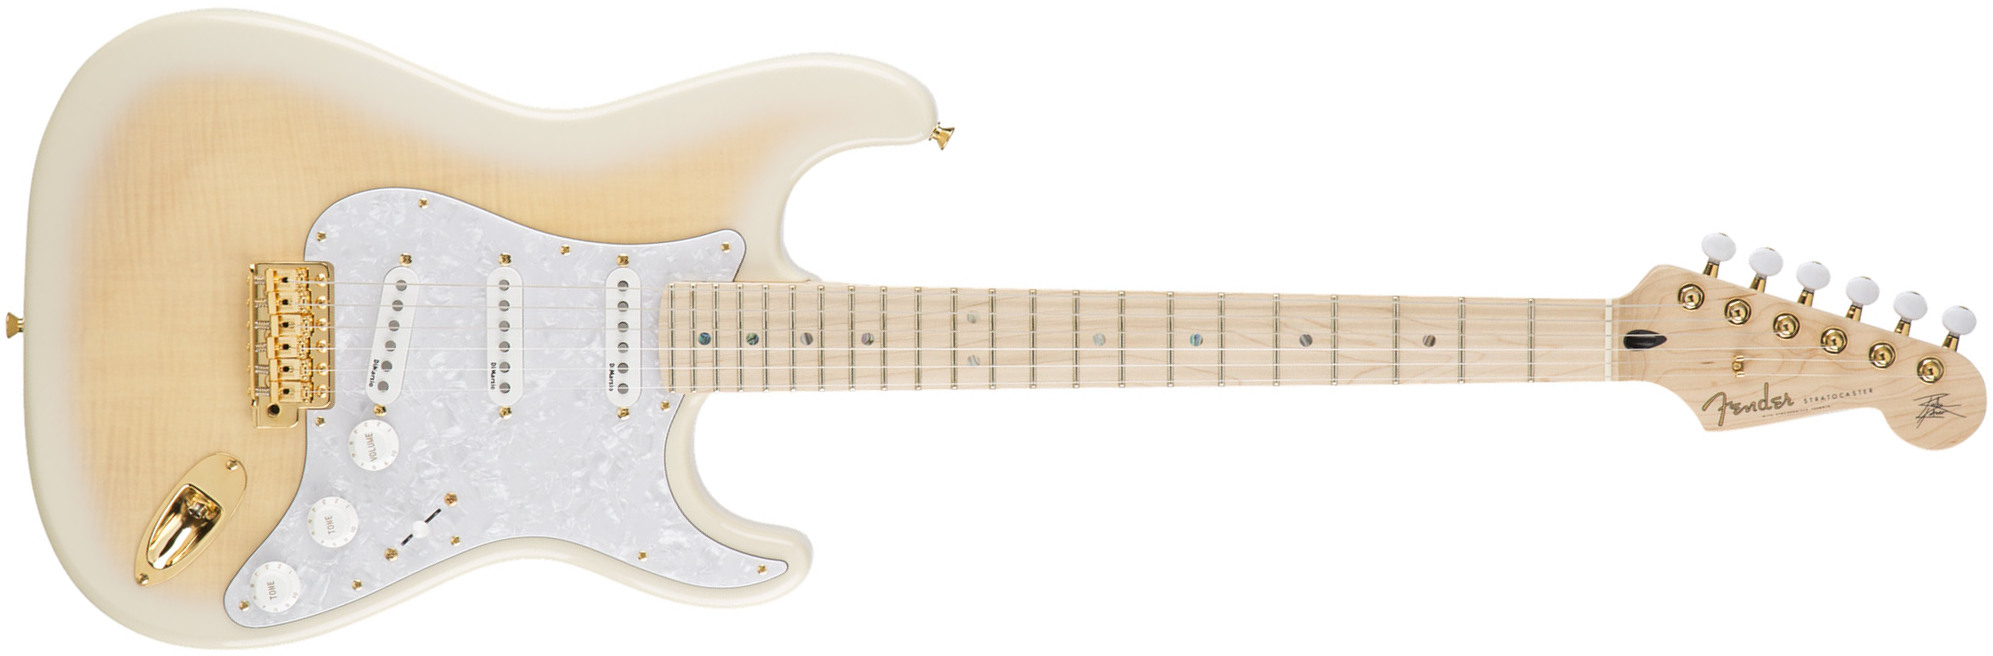 Fender Richie Kotzen Strat Jap Signature 3s Dimarzio Trem Mn - Transparent White Burst - Elektrische gitaar in Str-vorm - Main picture